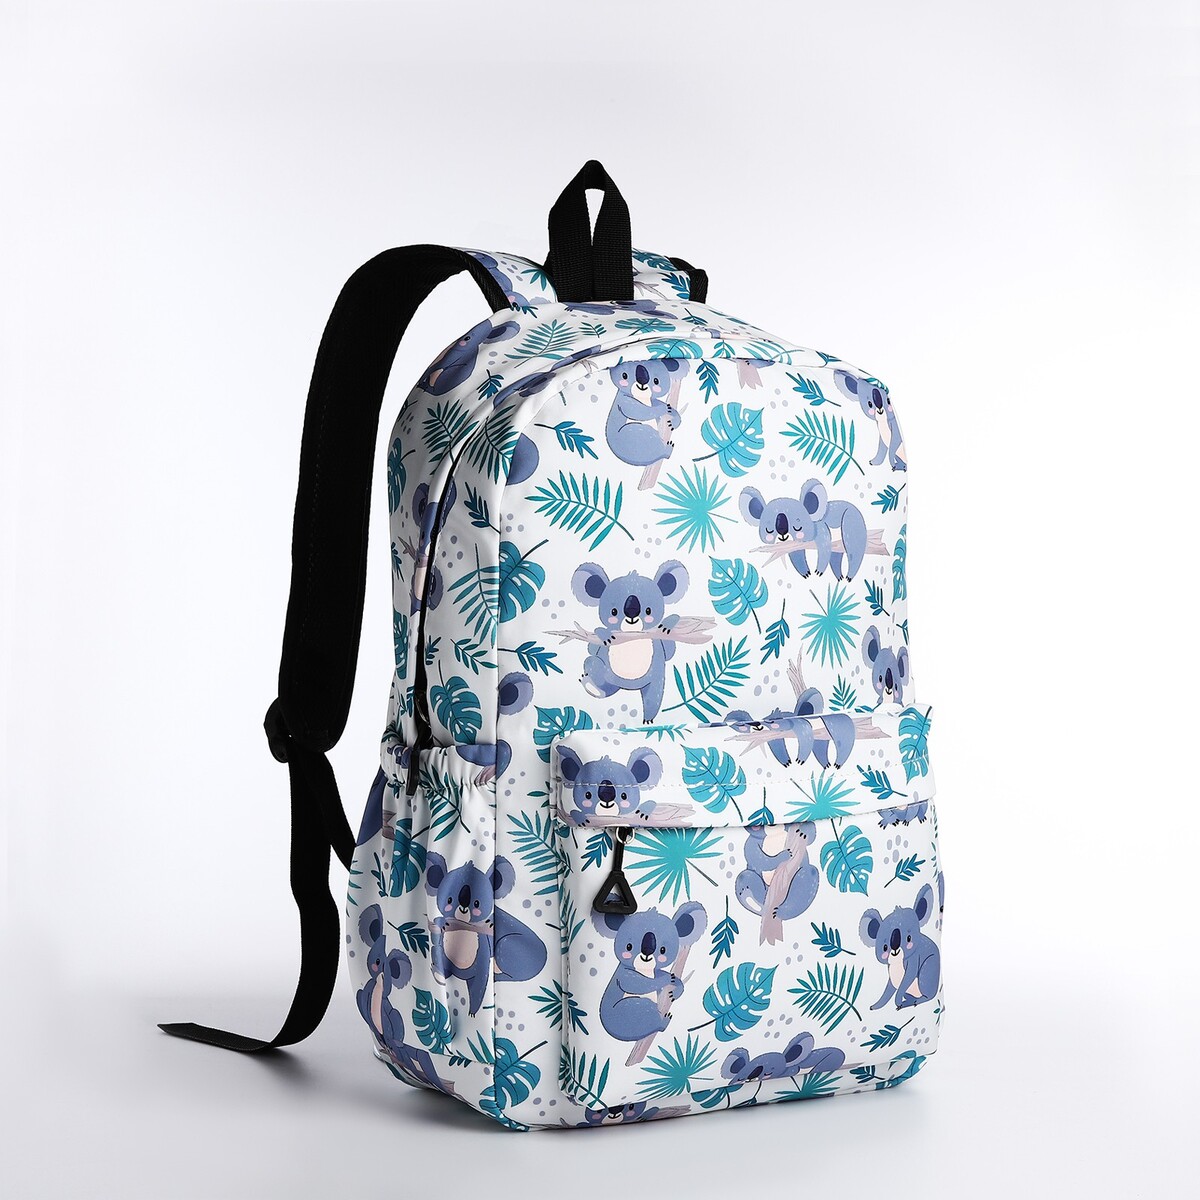 Рюкзак школьный из текстиля, 3 карманов, цвет белый/разноцветный рюкзак школьный из текстиля на молнии 6 карманов